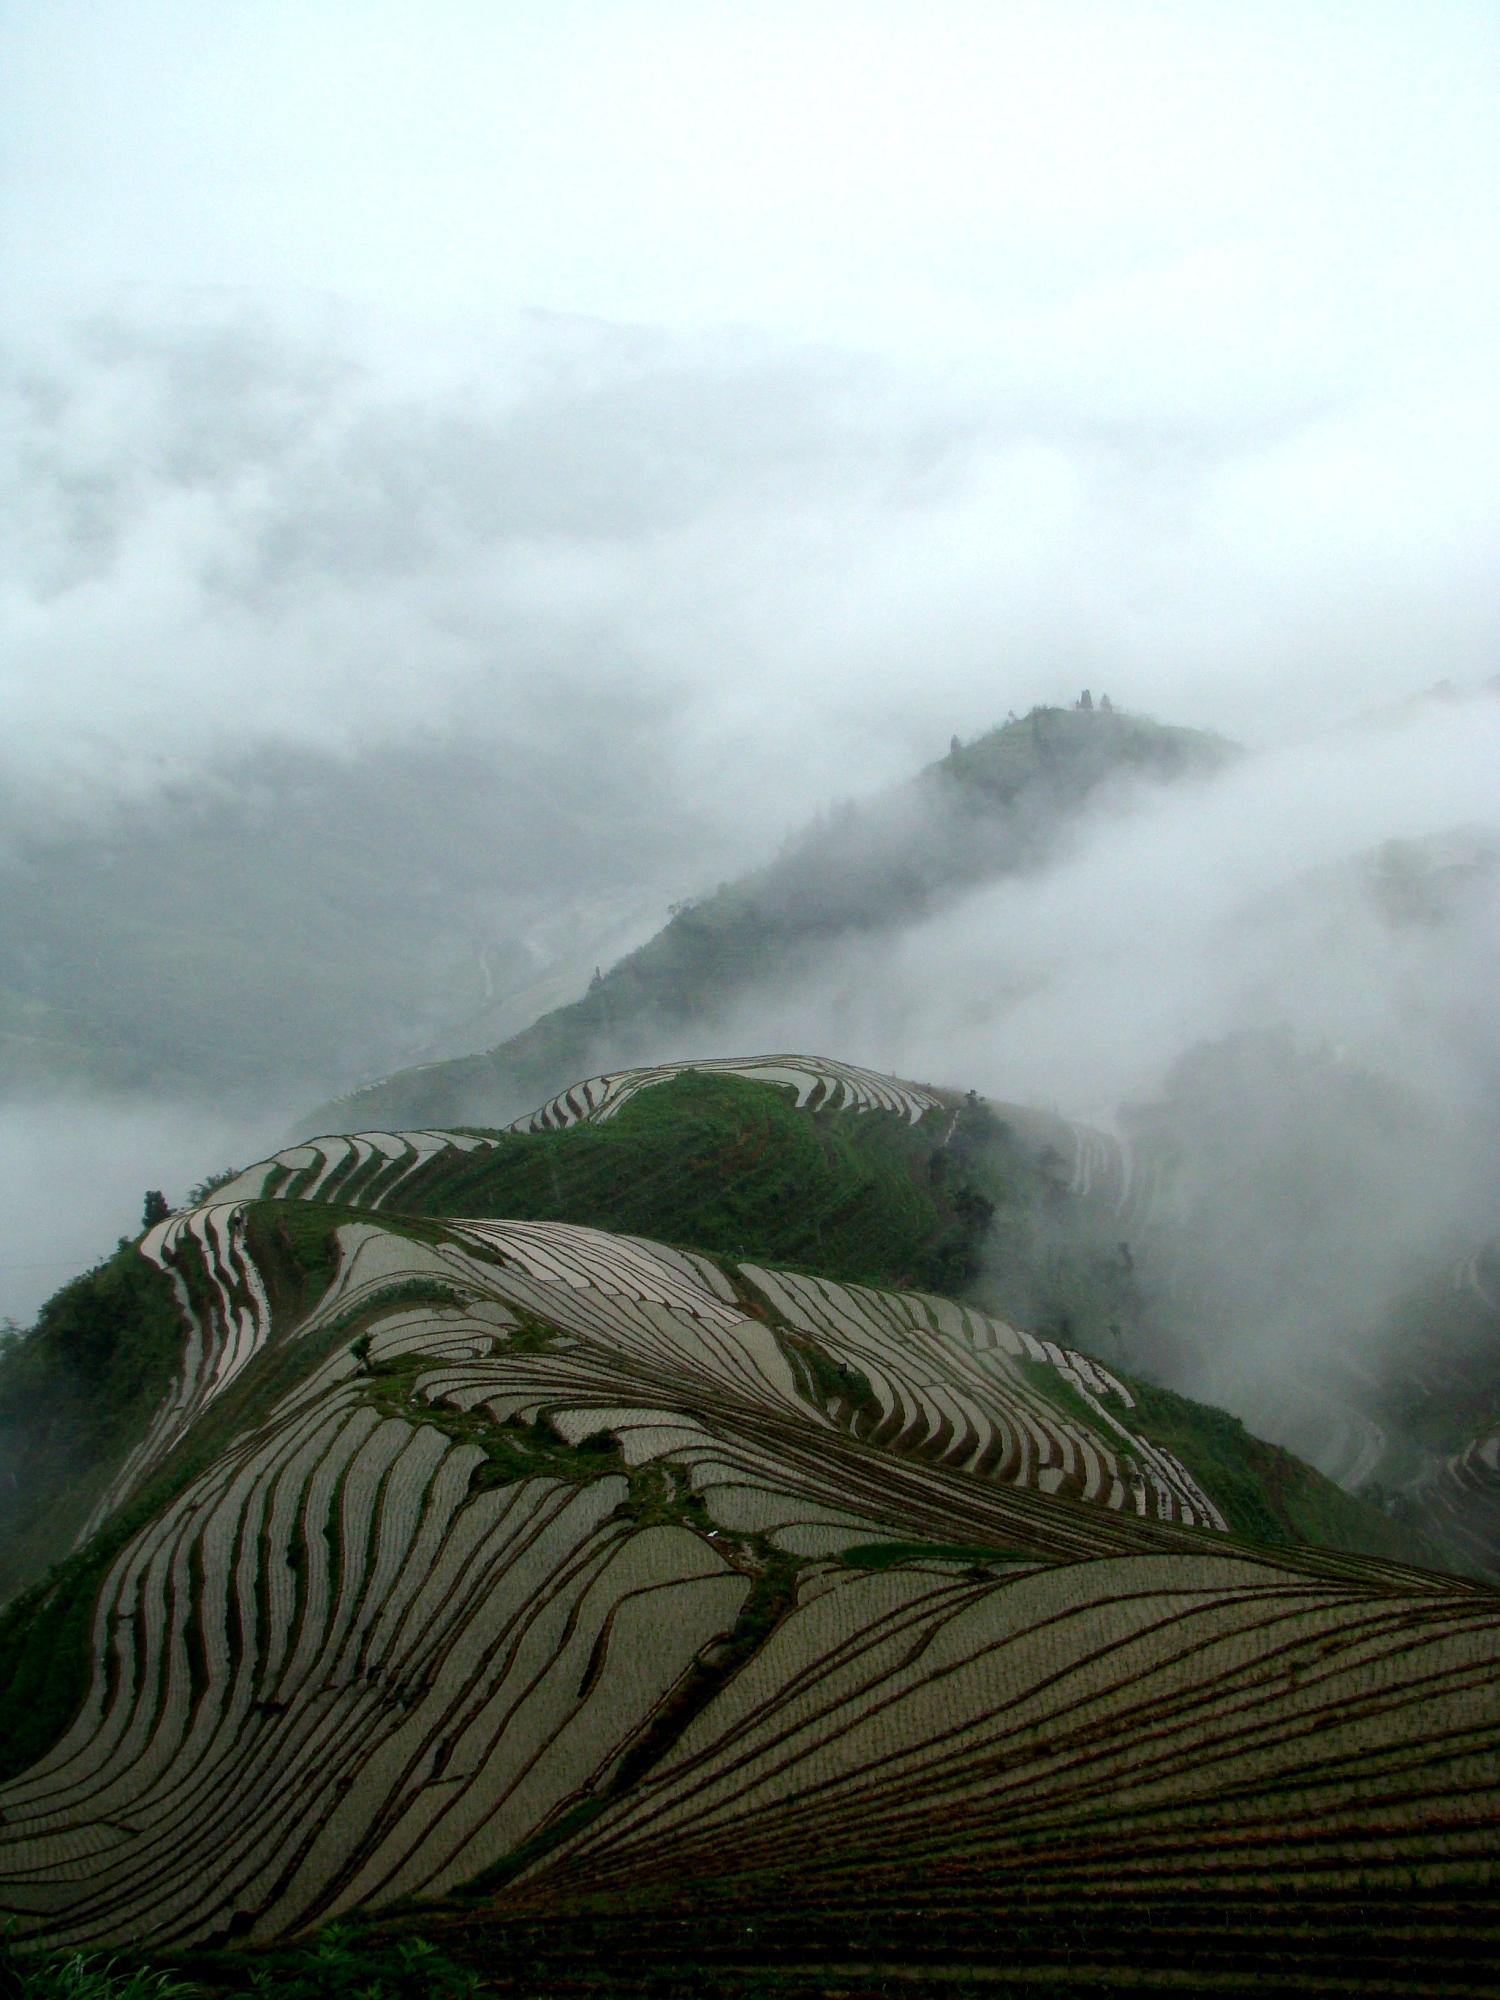 Terrace_field_guangxi_longji_china.jpg